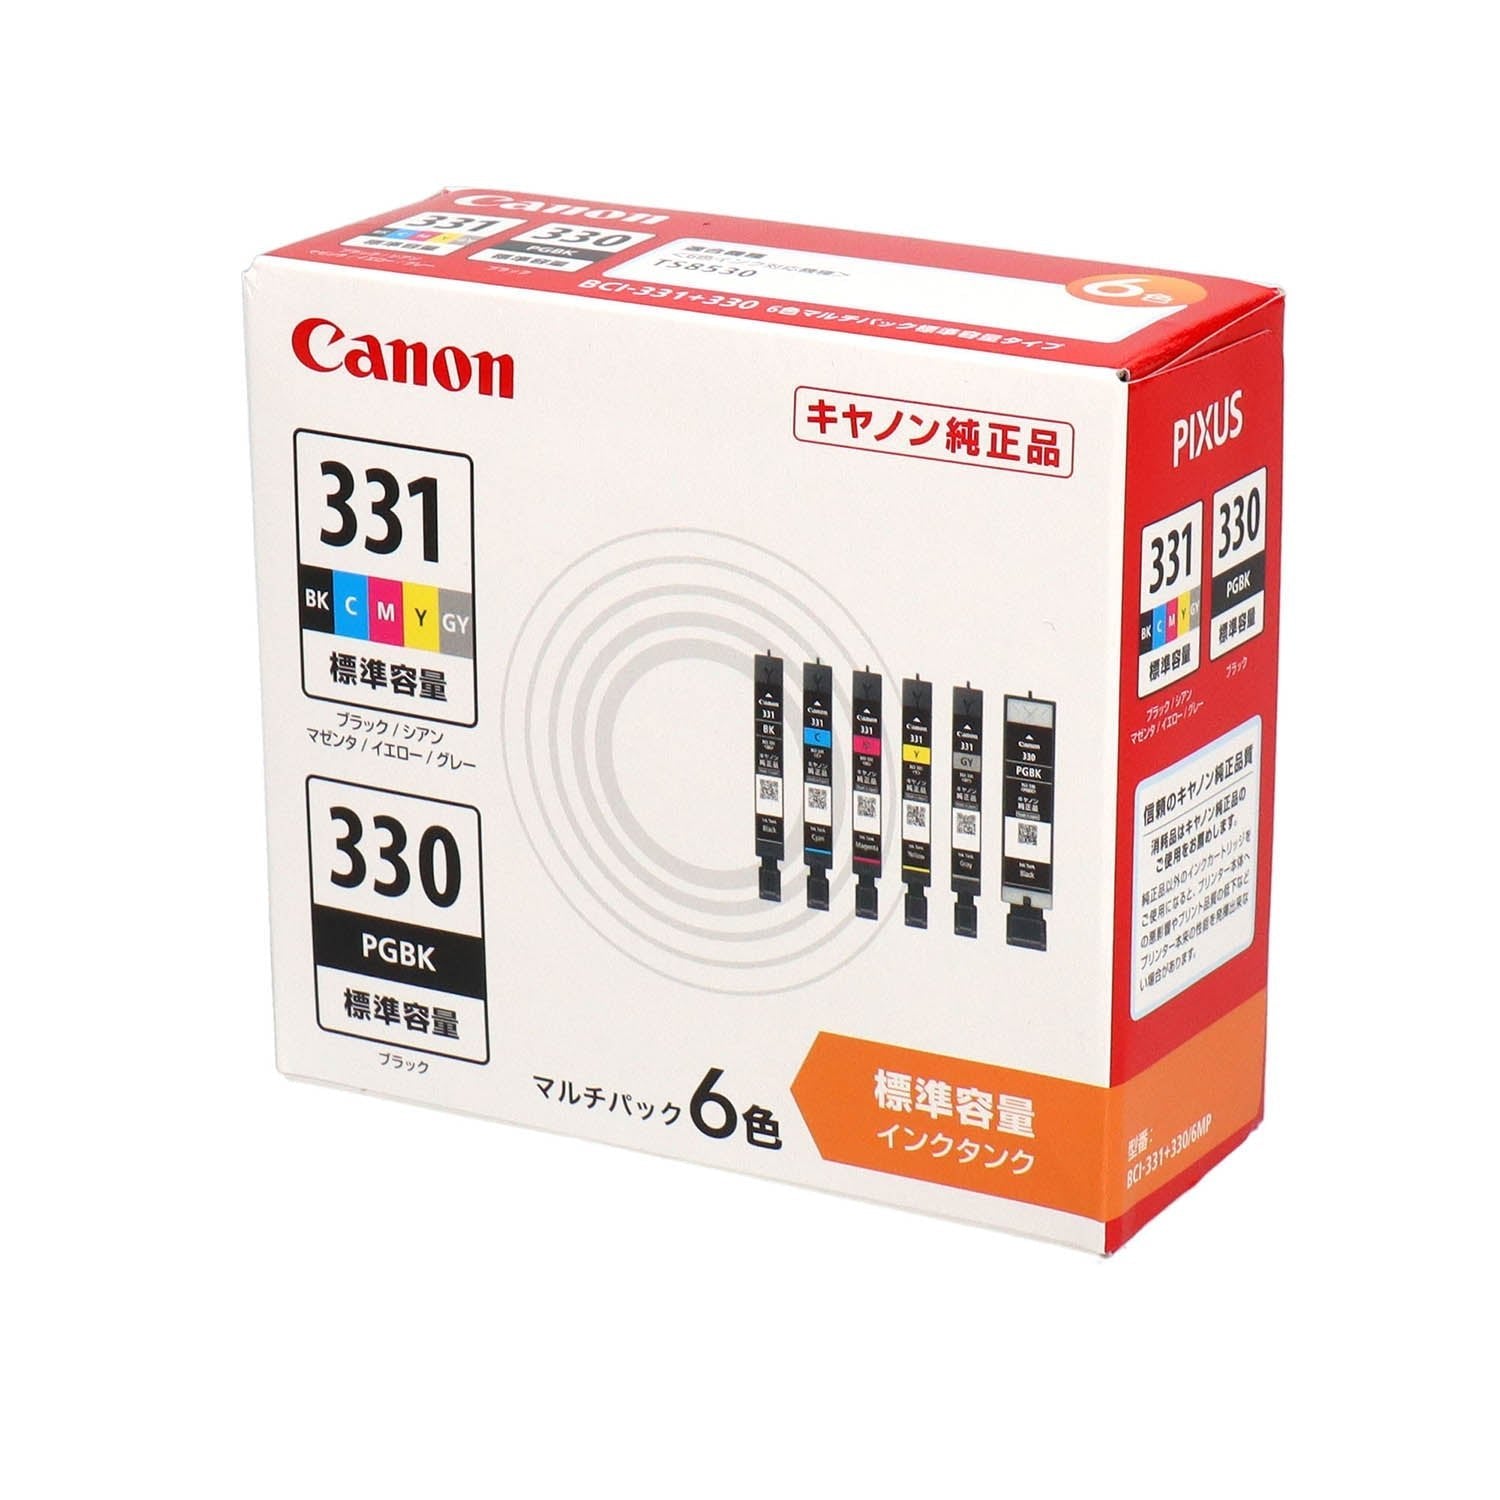 Canon使用済みインク143個セット - プリンター・複合機